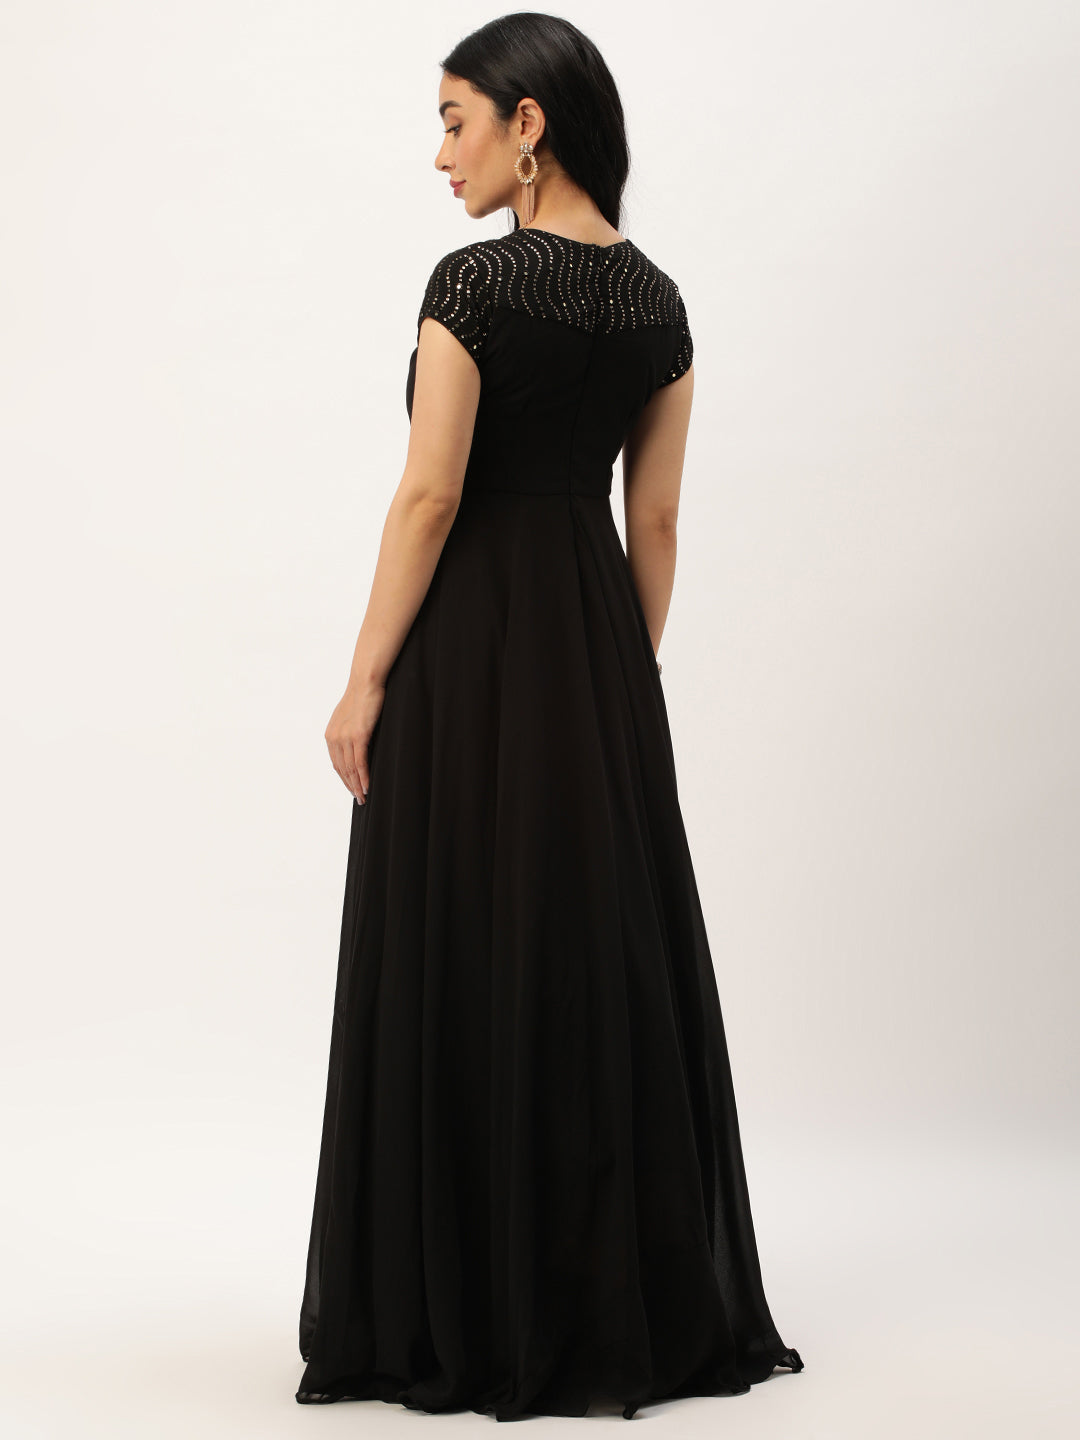 Black Sequined Round High-Neckline Flared Gown